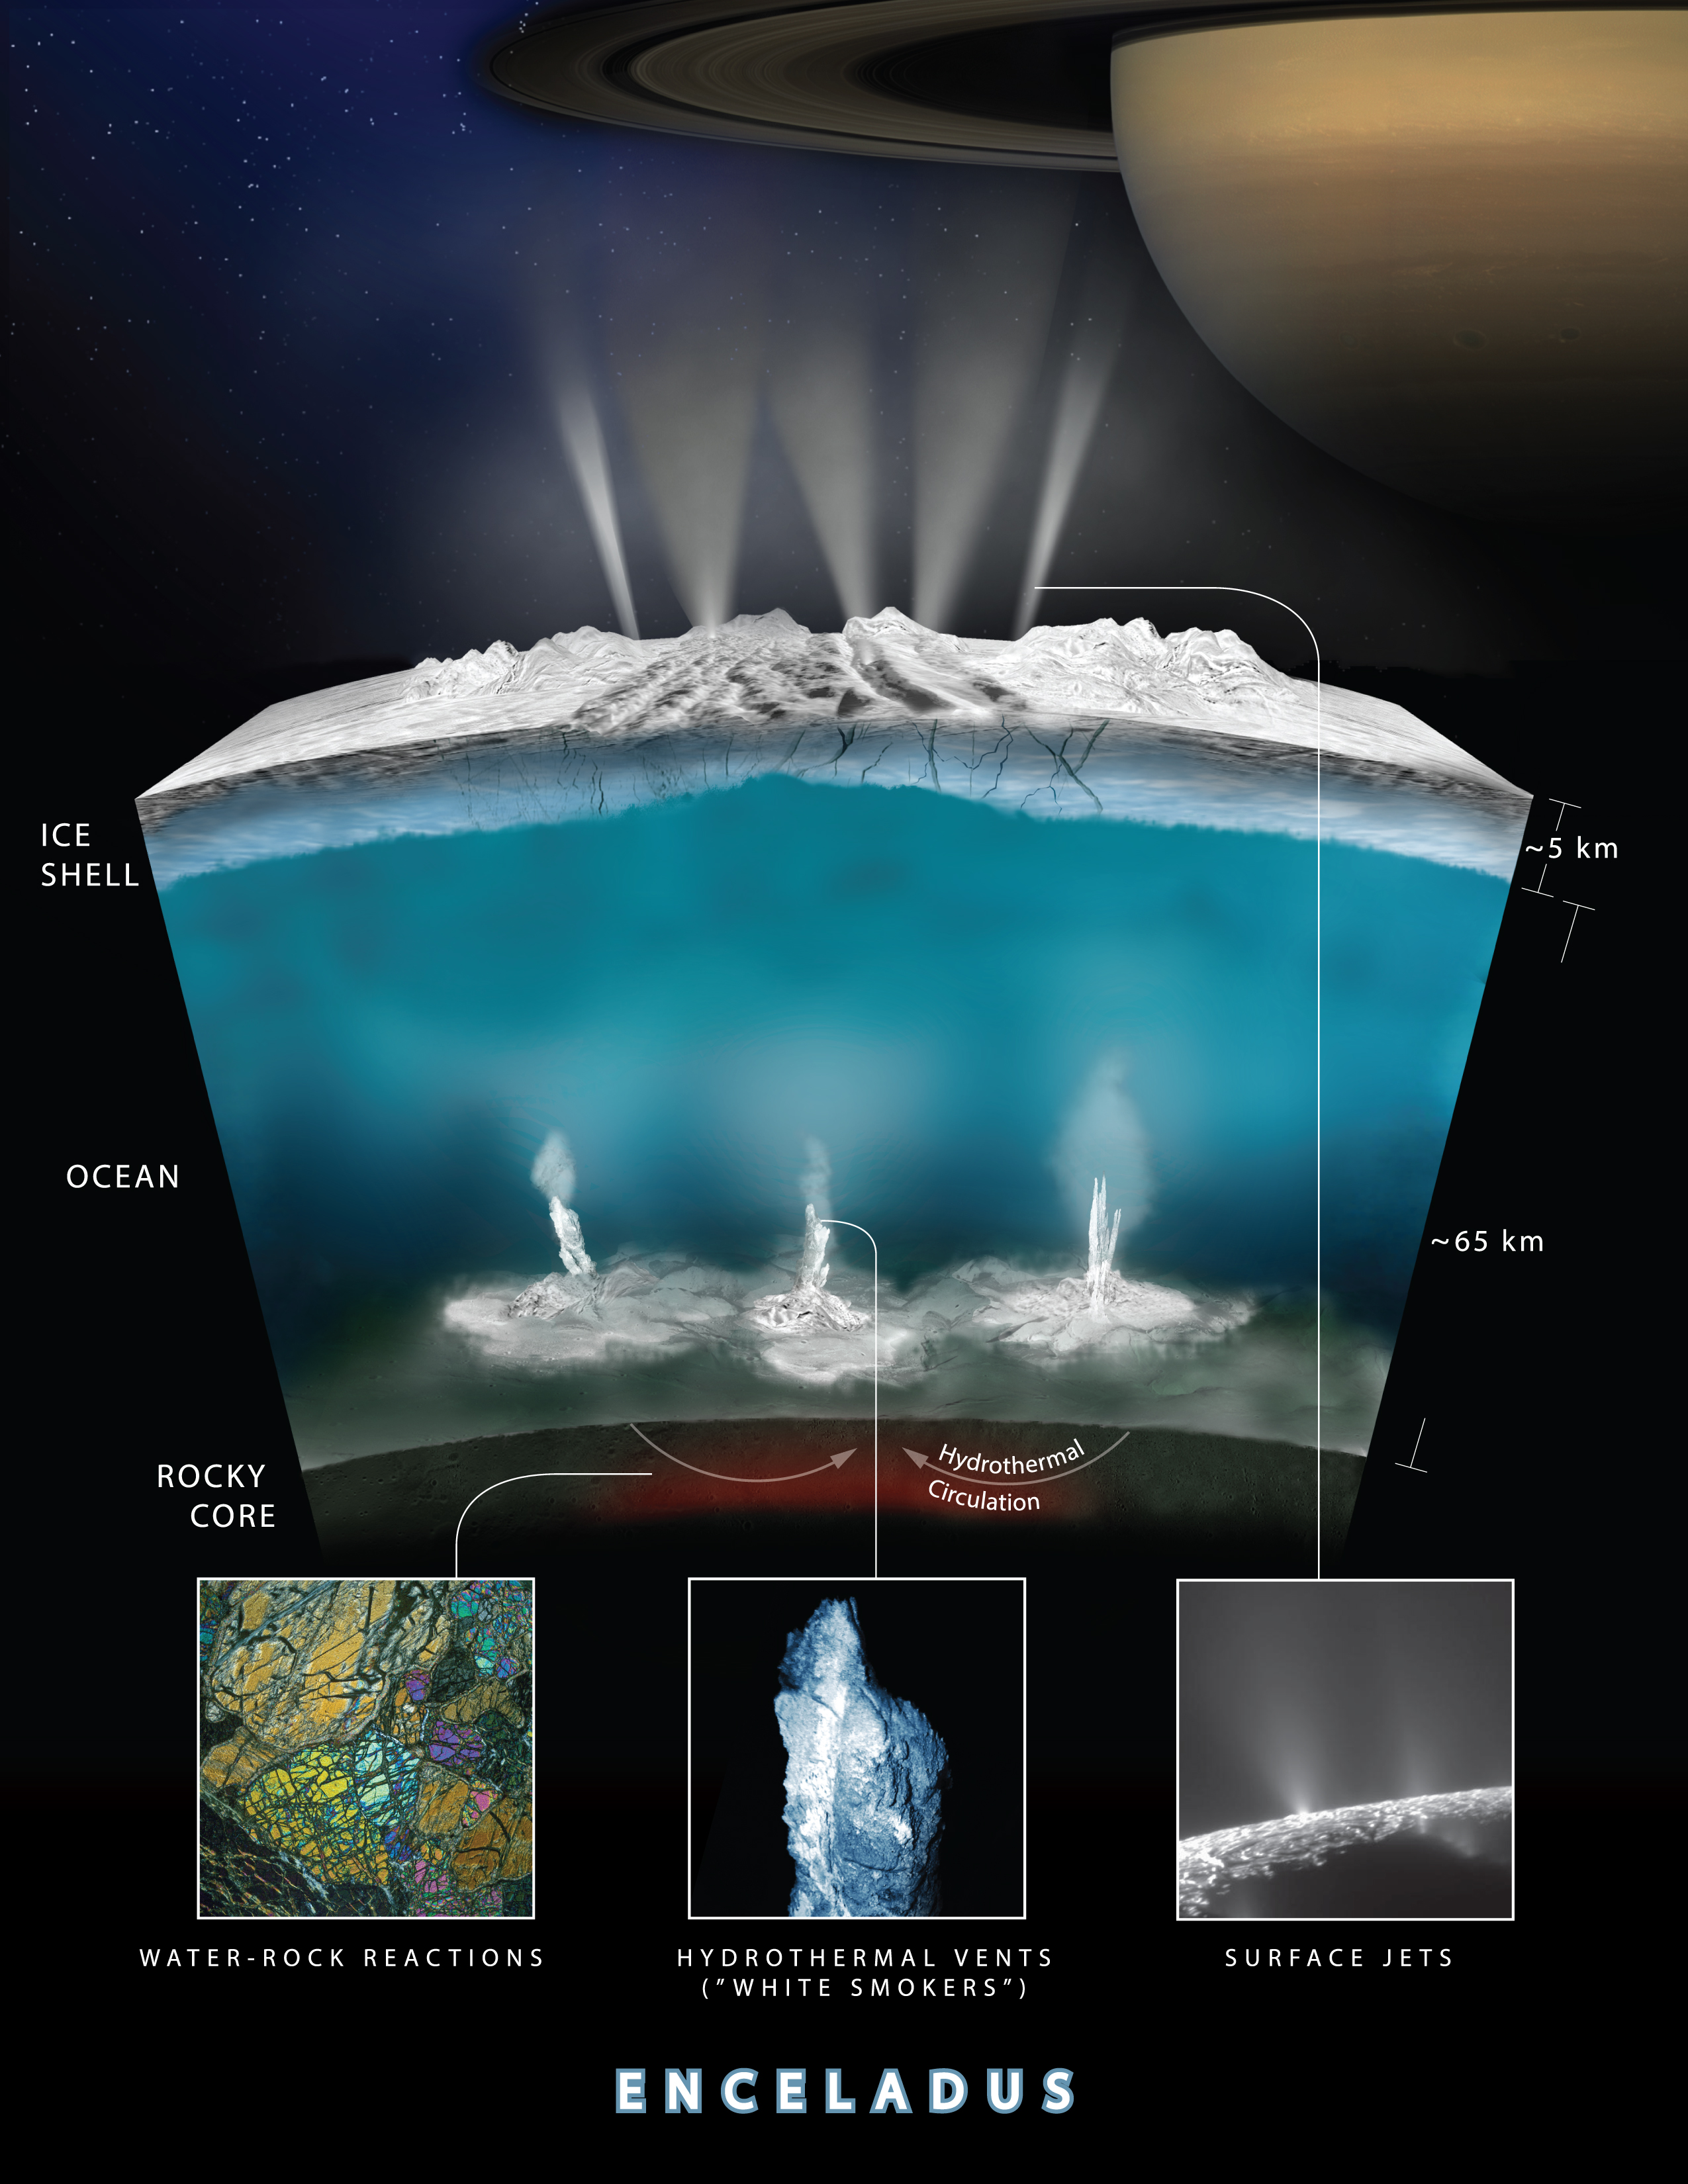 Grafika ilustrująca wewnętrzną strukturę Enceladusa (księżyc Saturna) oraz teorię oddziaływania wody ze skałami na dnie oceanu, który znajduje się pod jego powierzchnią. Źródło: NASA/JPL-Caltech/Southwest Research Institute